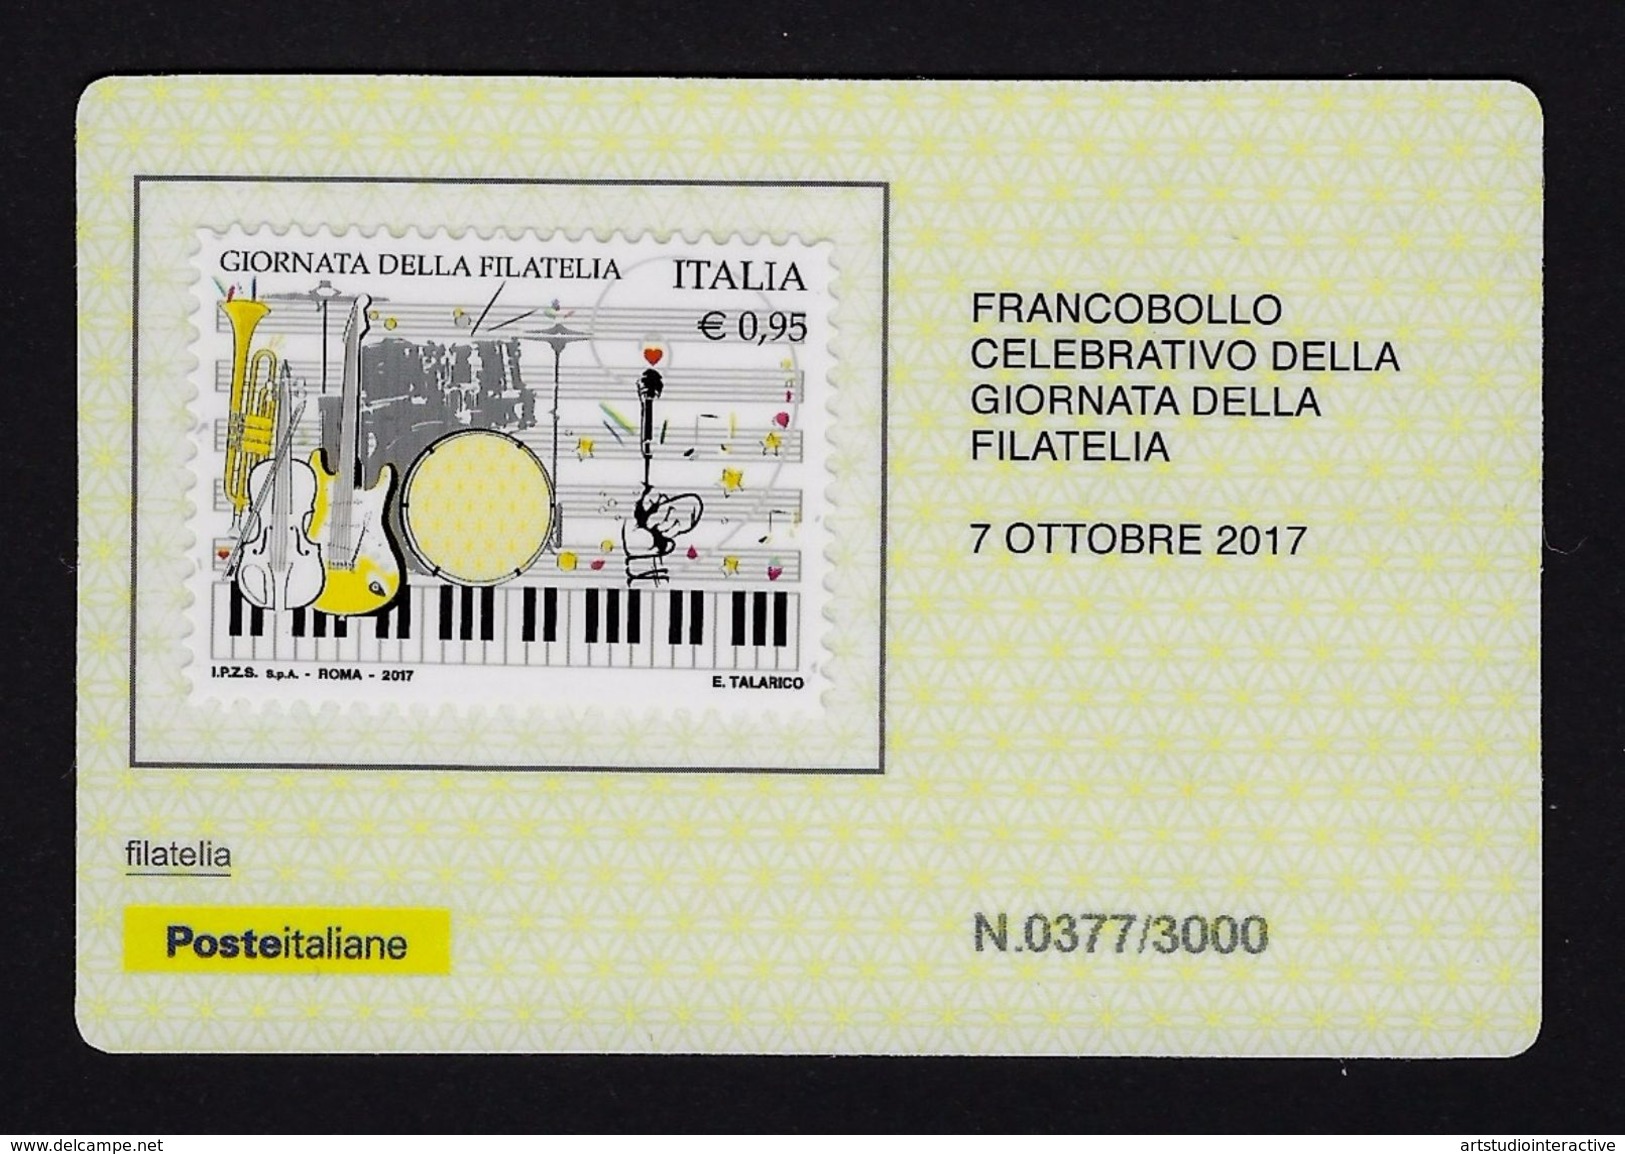 2017 ITALIA REPUBBLICA "GIORNATA DELLA FILATELIA 2017" TESSERA FILATELICA (377/3000) - Cartes Philatéliques